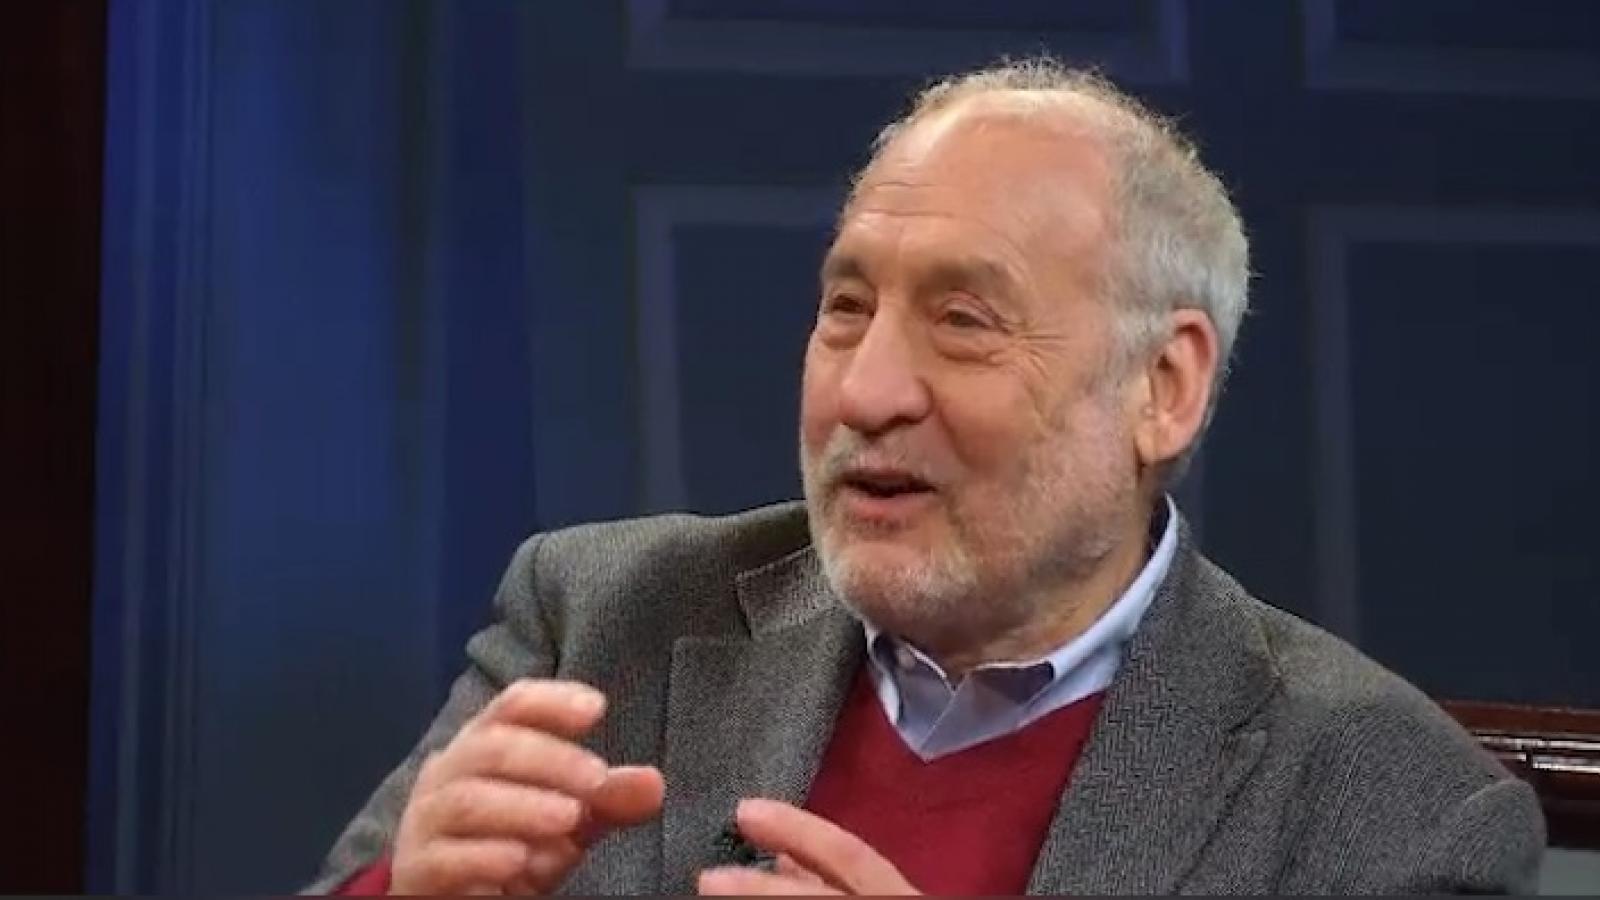 Joseph Stiglitz being interviewed